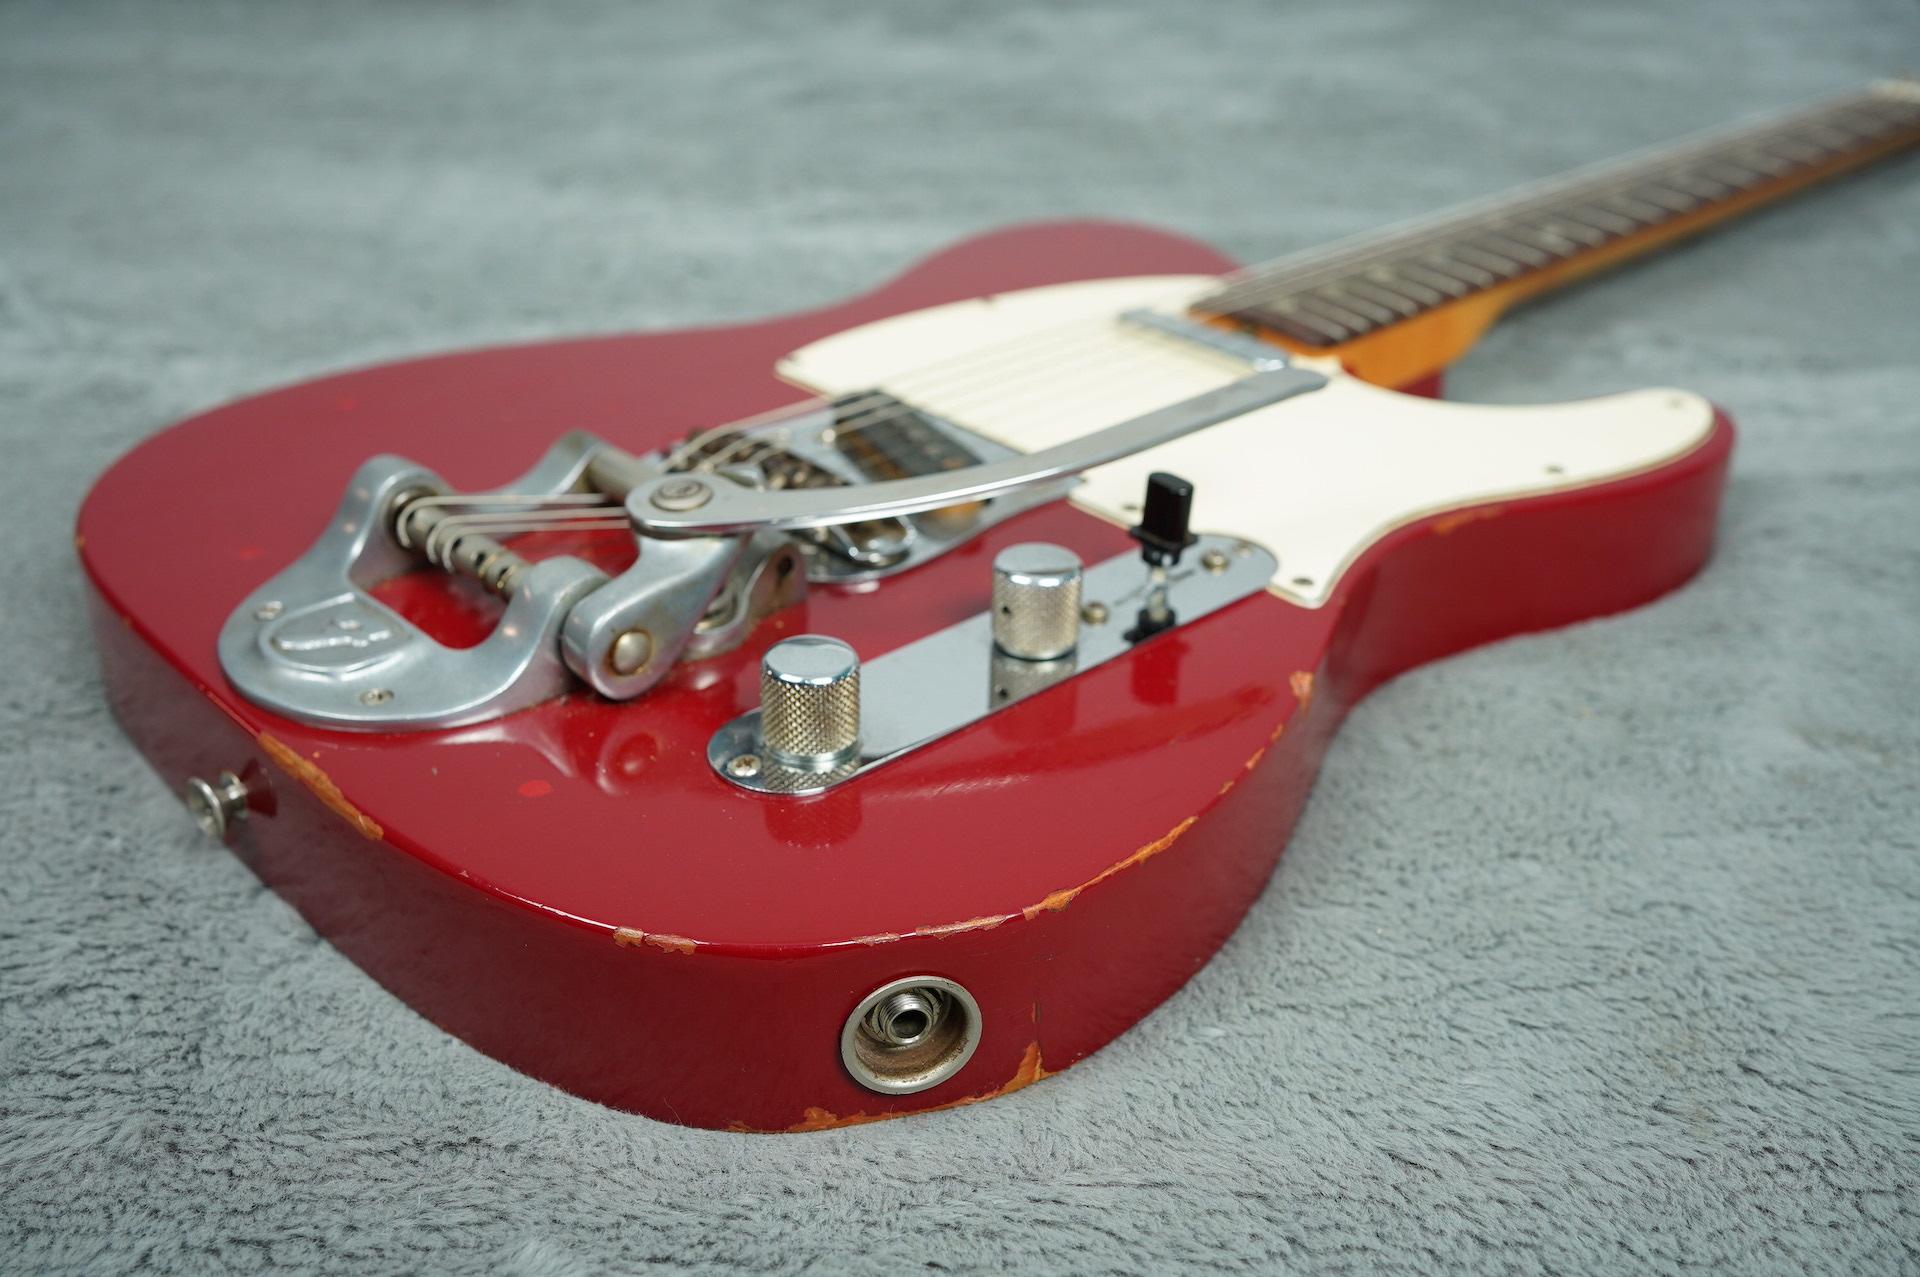 1969 Fender Telecaster Dakota Red